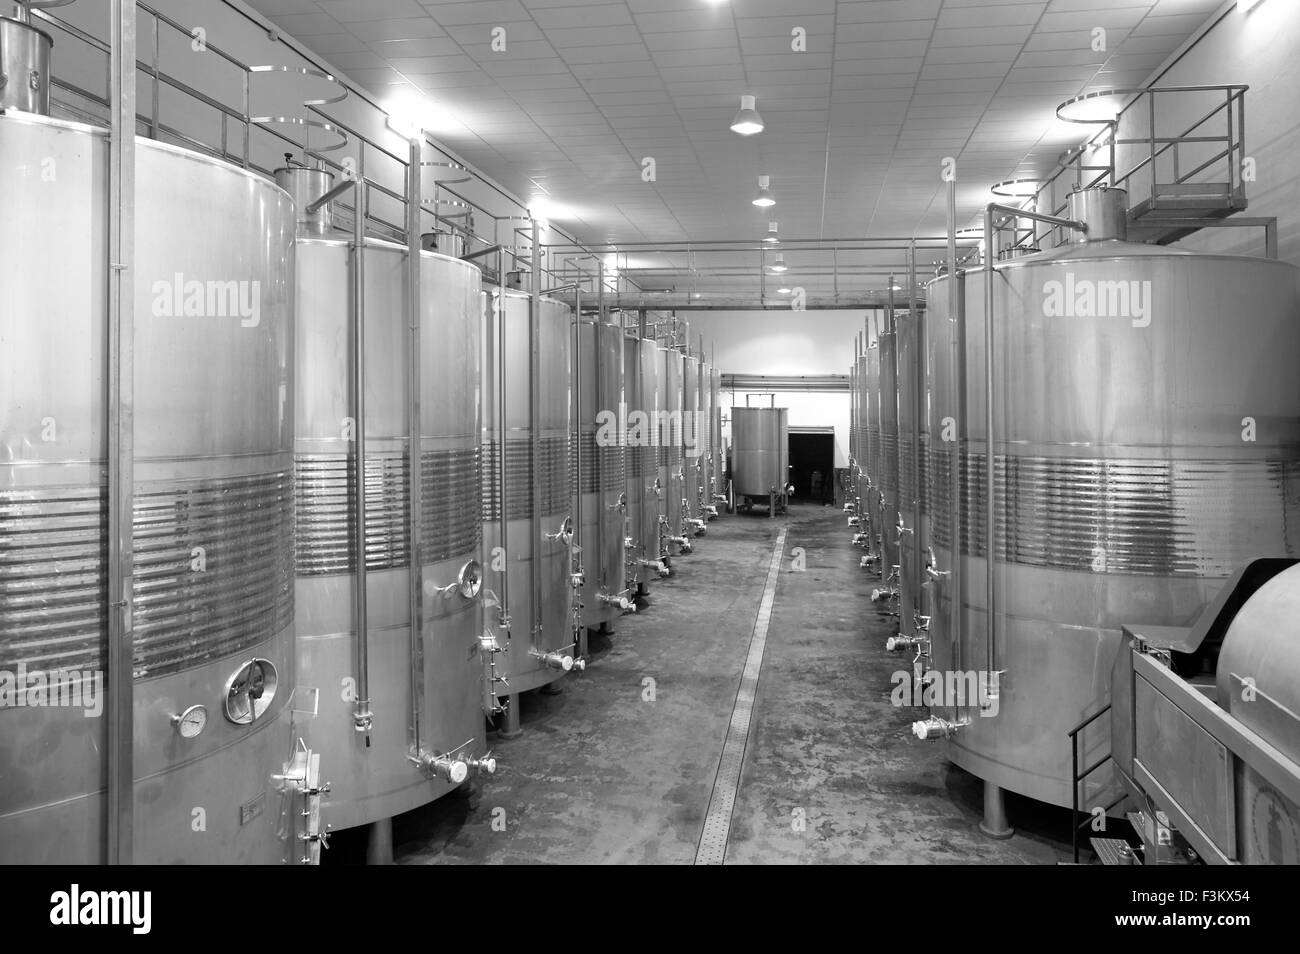 Processus de vinification fermentation industrielle dans un canons d'acier Banque D'Images